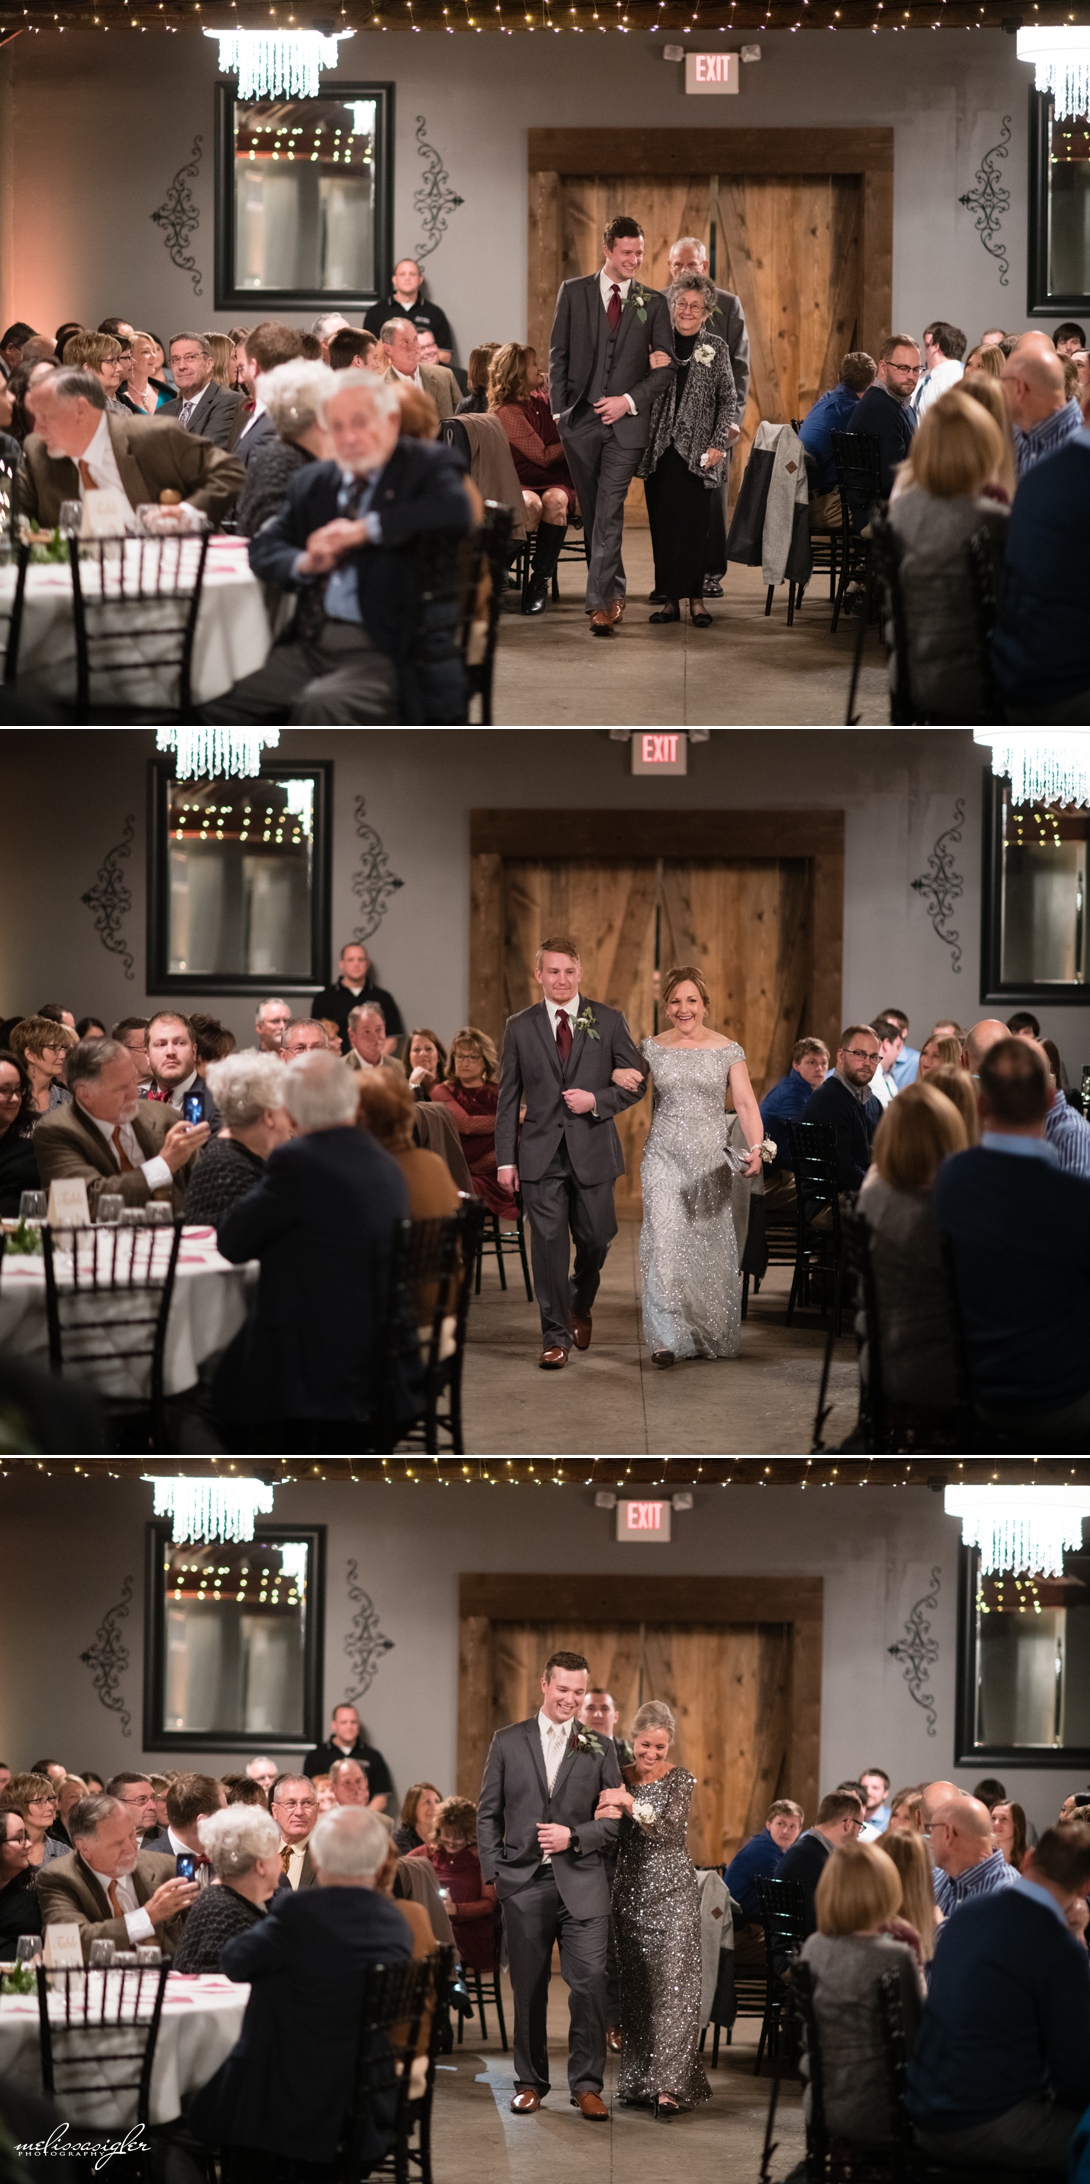 W Banquet Hall wedding